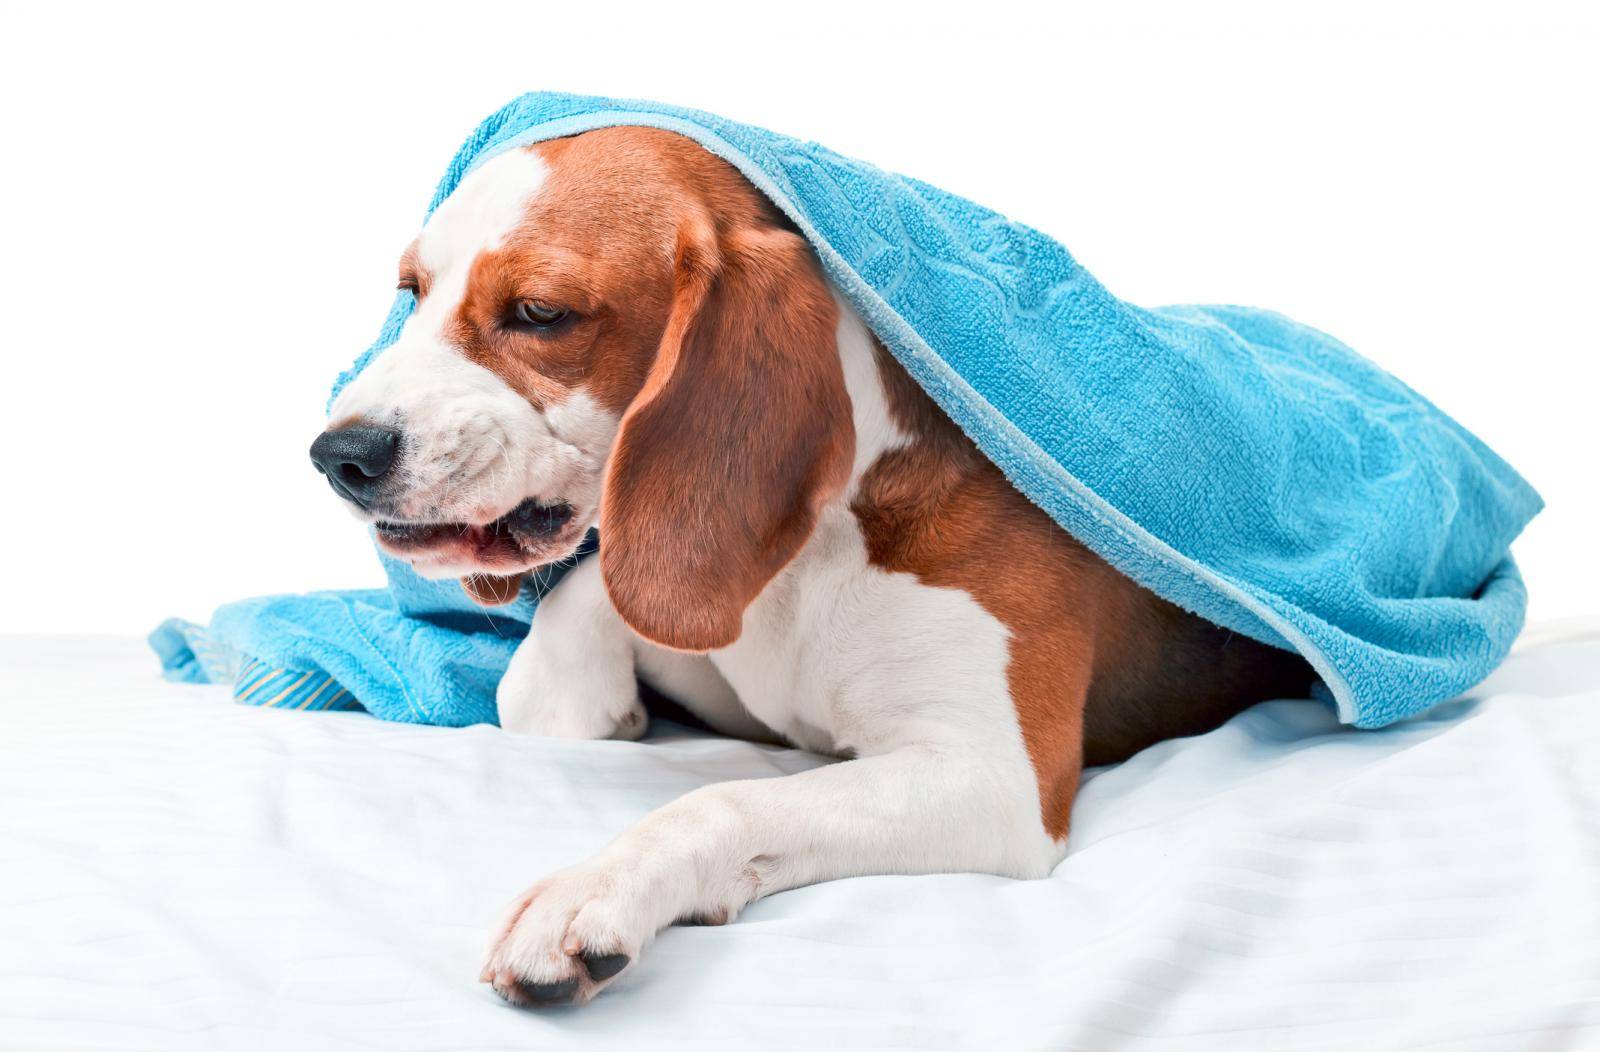 Учащенное дыхание у собаки: показатели нормы и отклонения